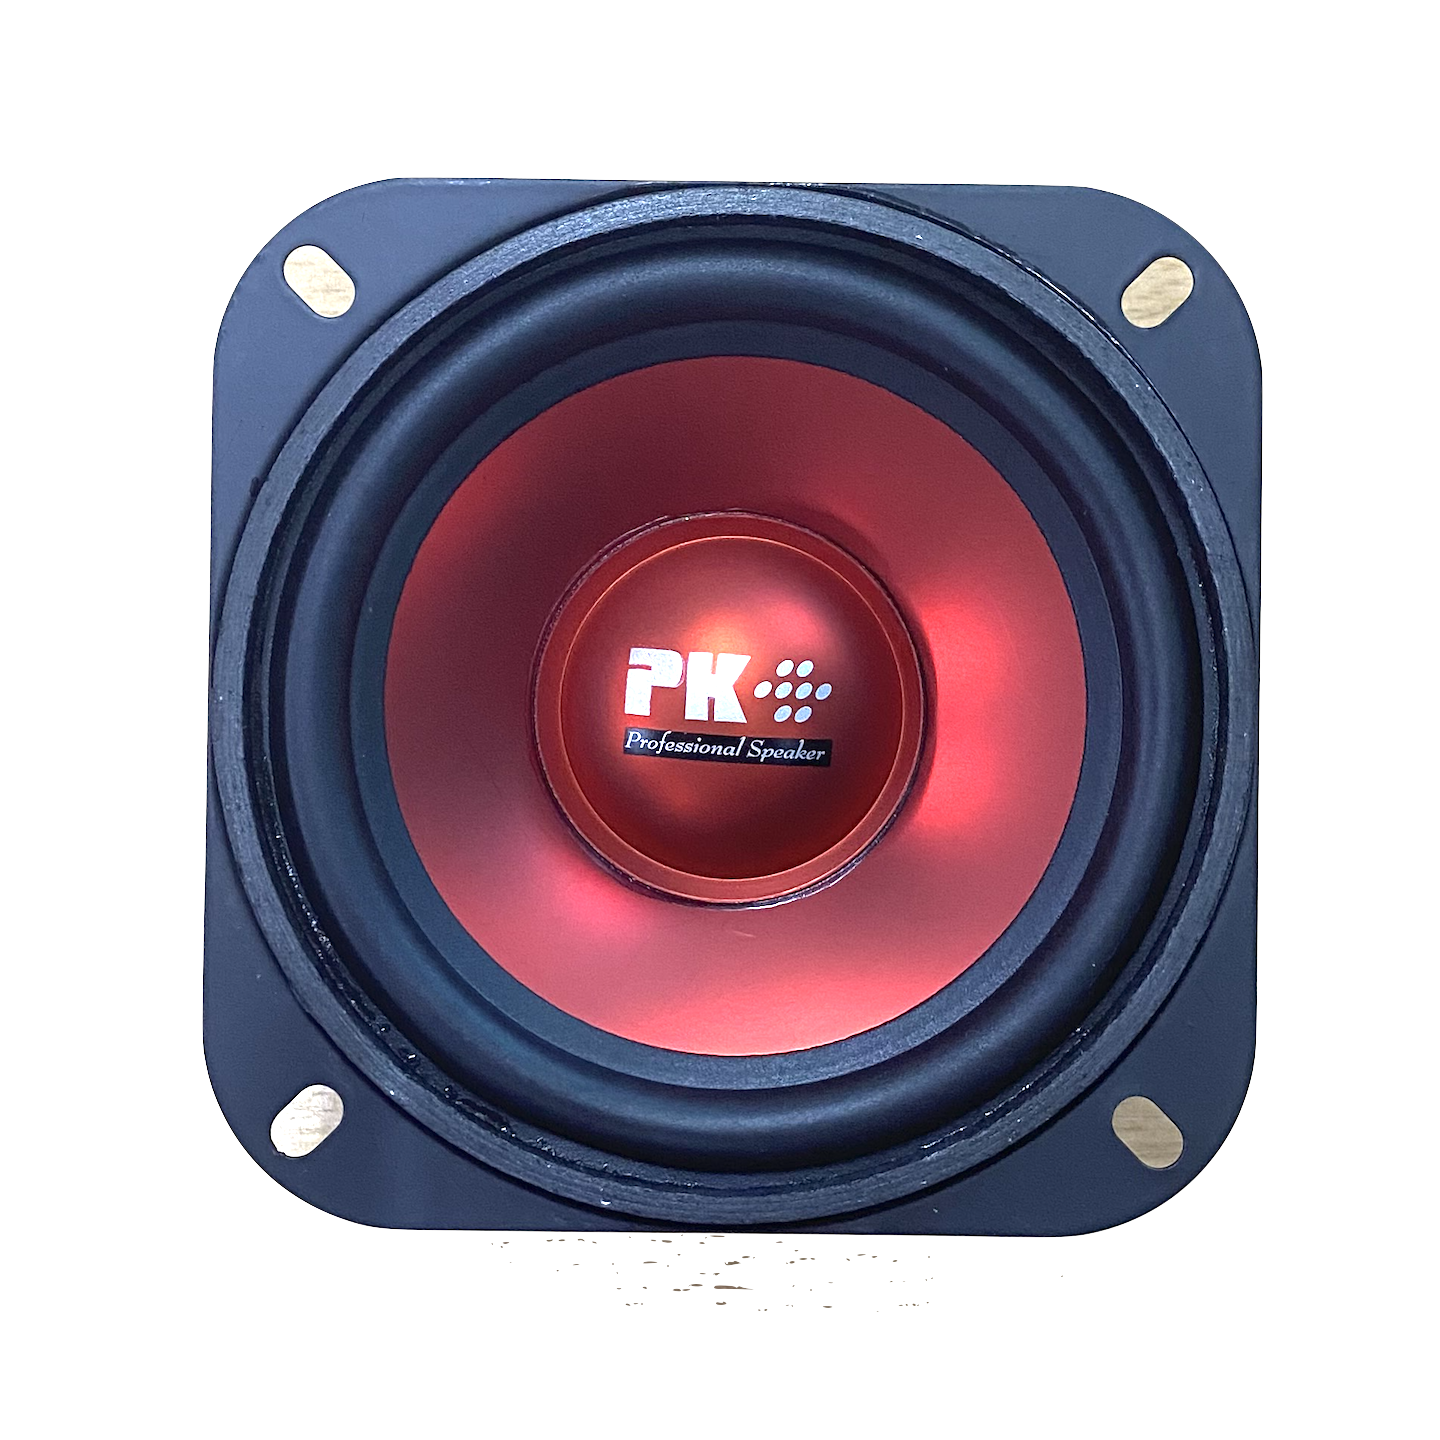 เสียงดีมาก! ดอกลำโพง 4 นิ้ว 100 W แม่เหล็ก 80 มิล รุ่น 4PK ยี่ห้อ PK Professional